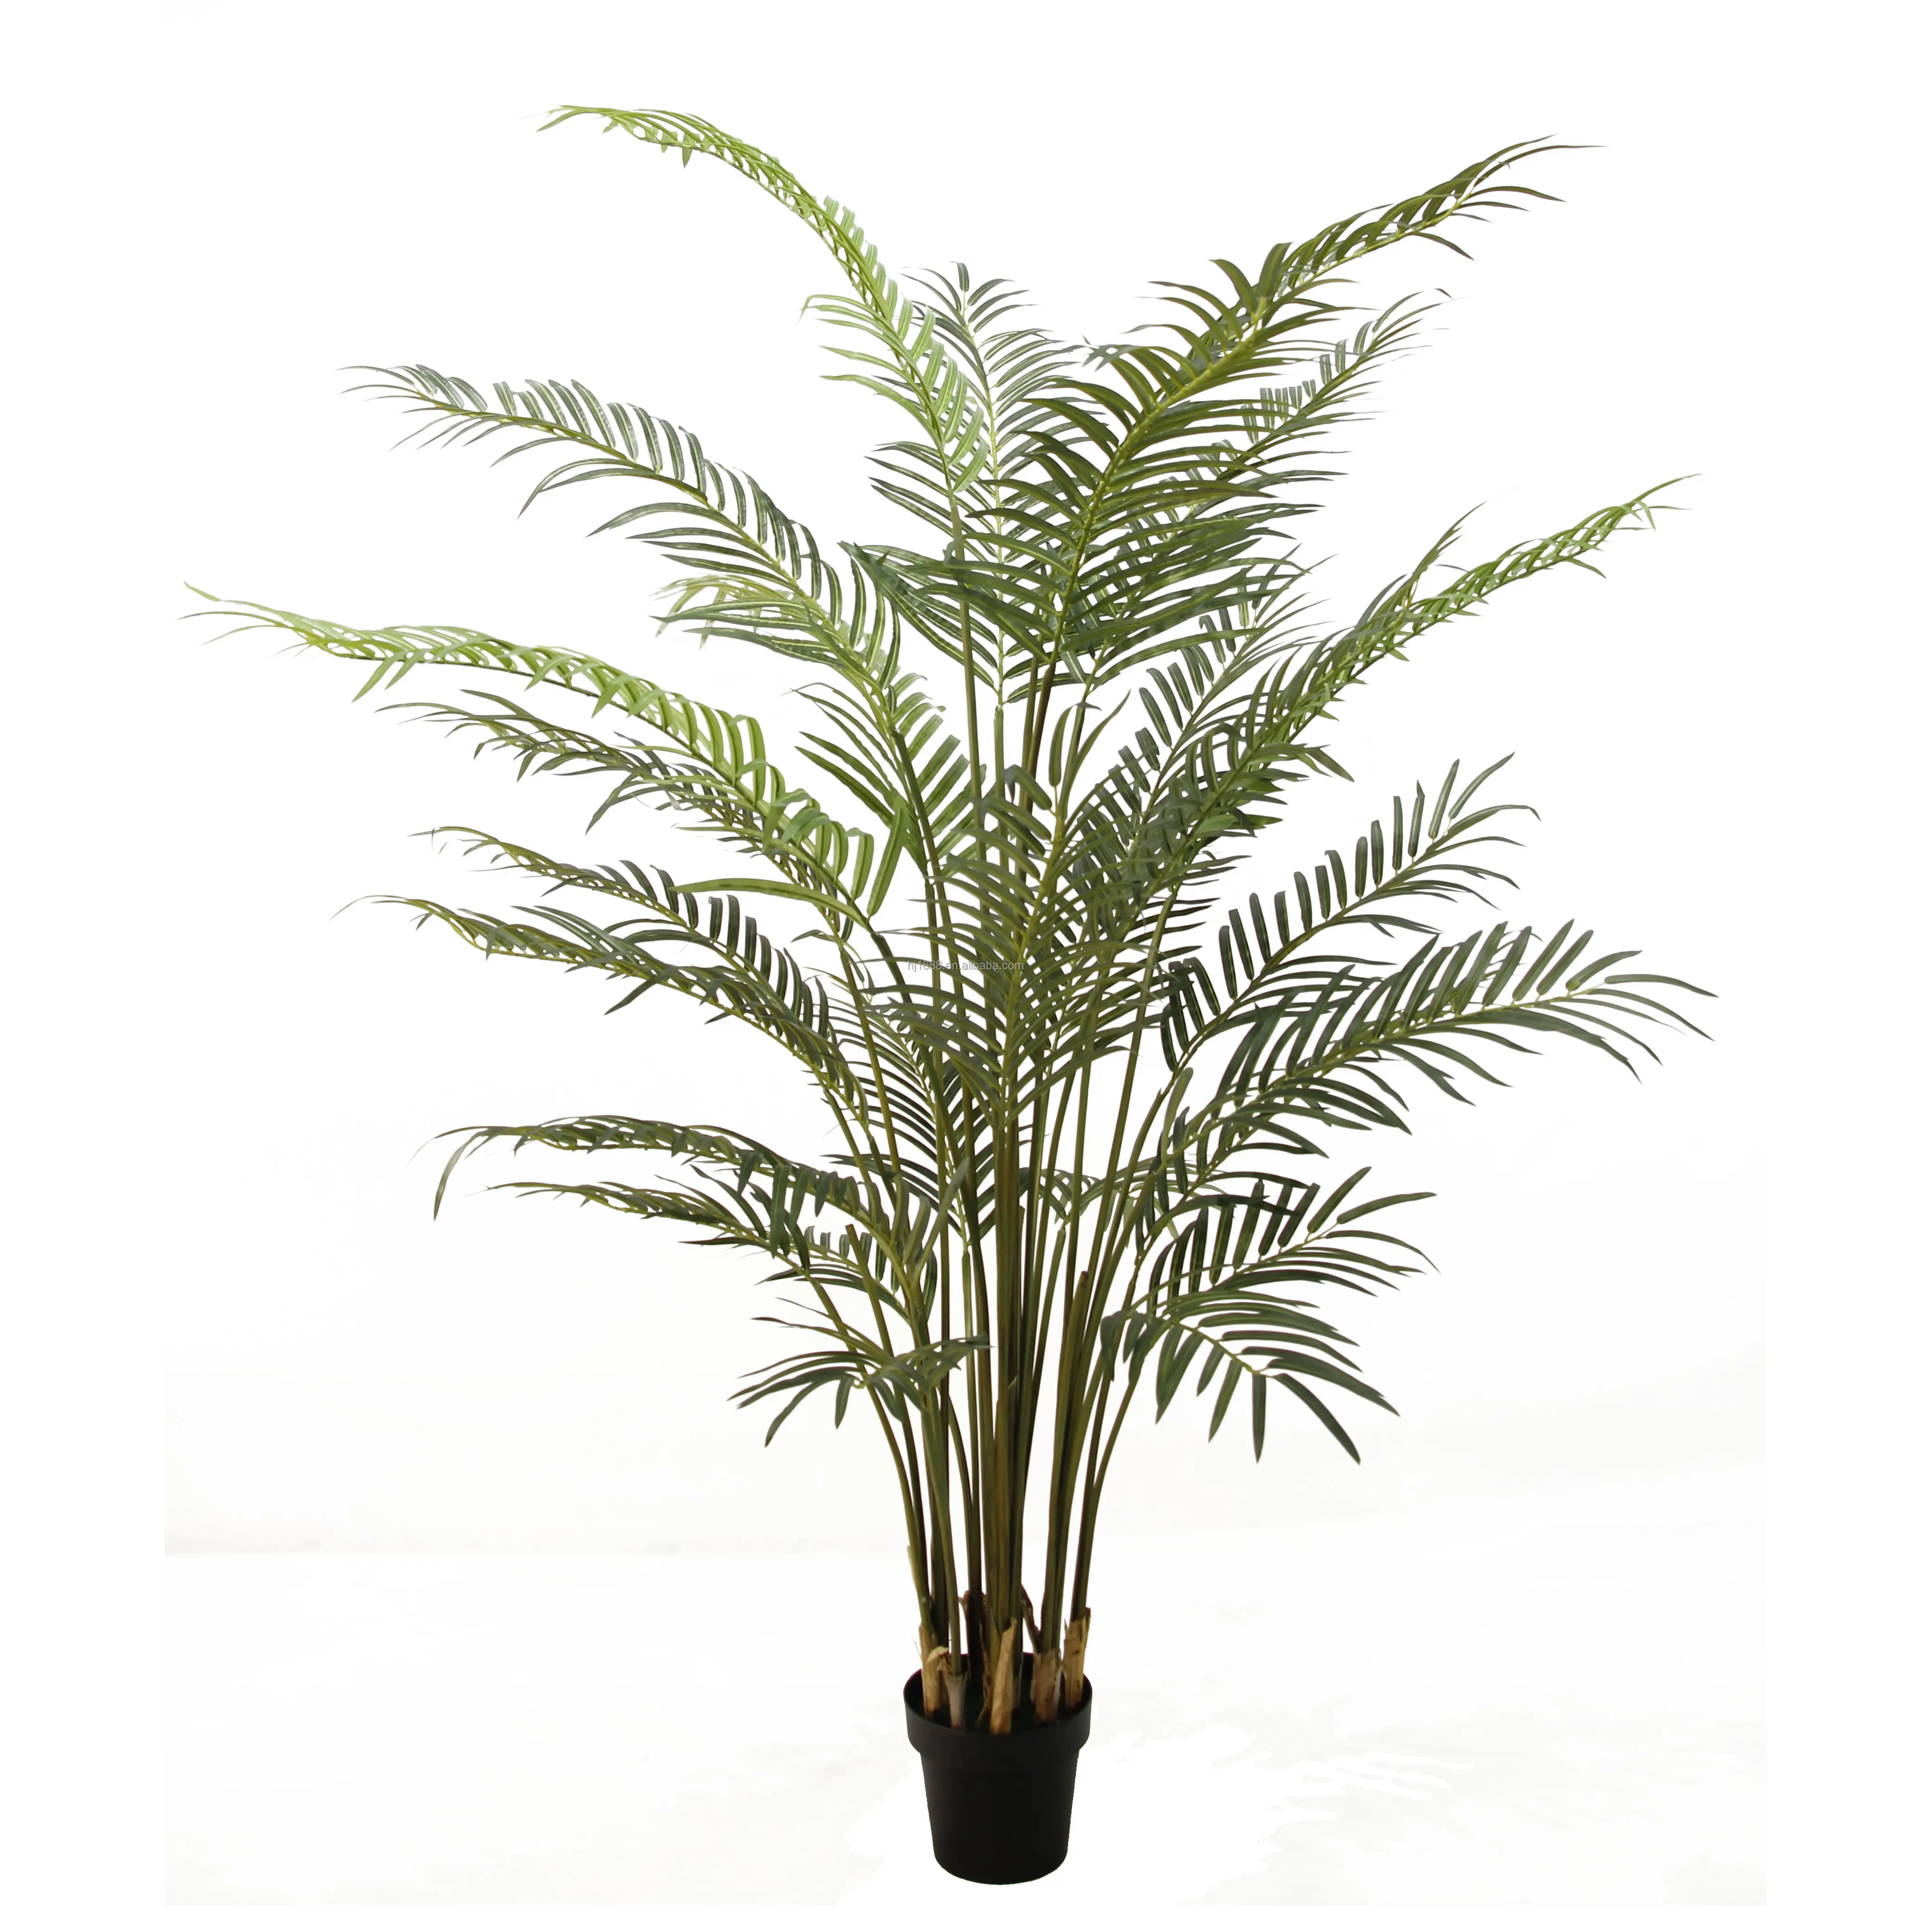 La seta resistente ai raggi UV all'ingrosso della fabbrica lascia le piante finte tocco reale Areca 2m palma artificiale per la decorazione esterna dell'interno